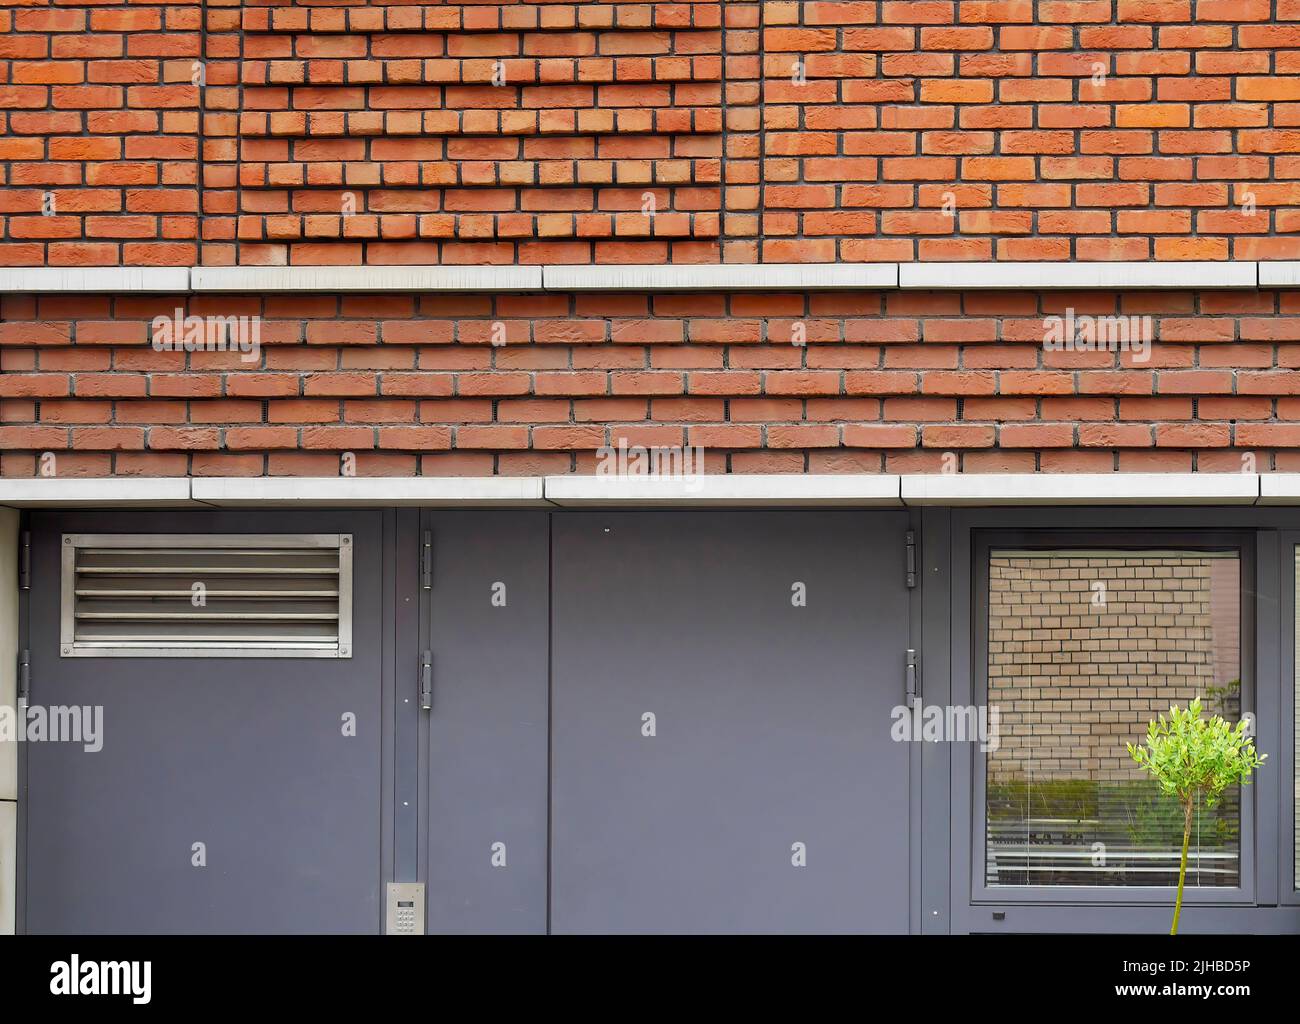 Elevación de forma geométrica de la pared exterior de ladrillo con puerta metálica, edificio de diseño moderno Foto de stock